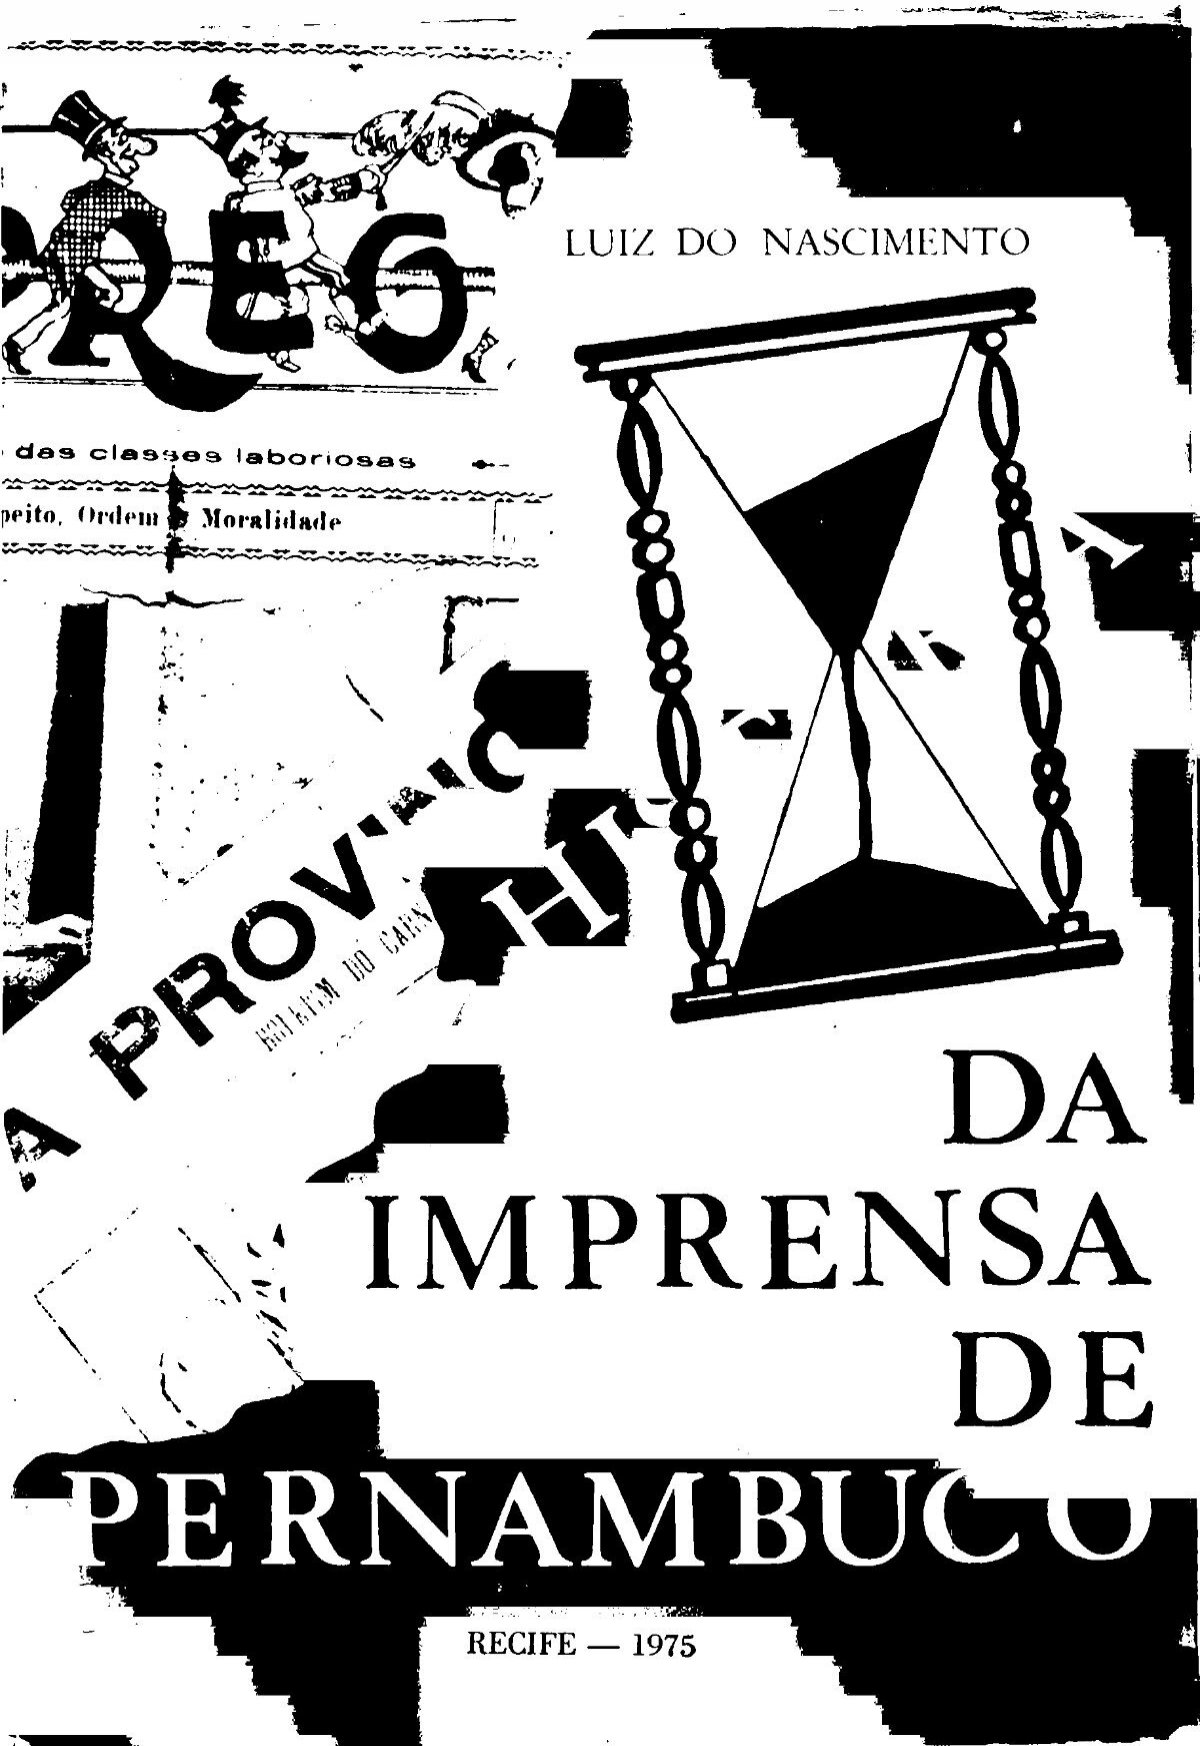 Professor Joaquim Dias: Jogo do bicho em Pelotas em 1900!